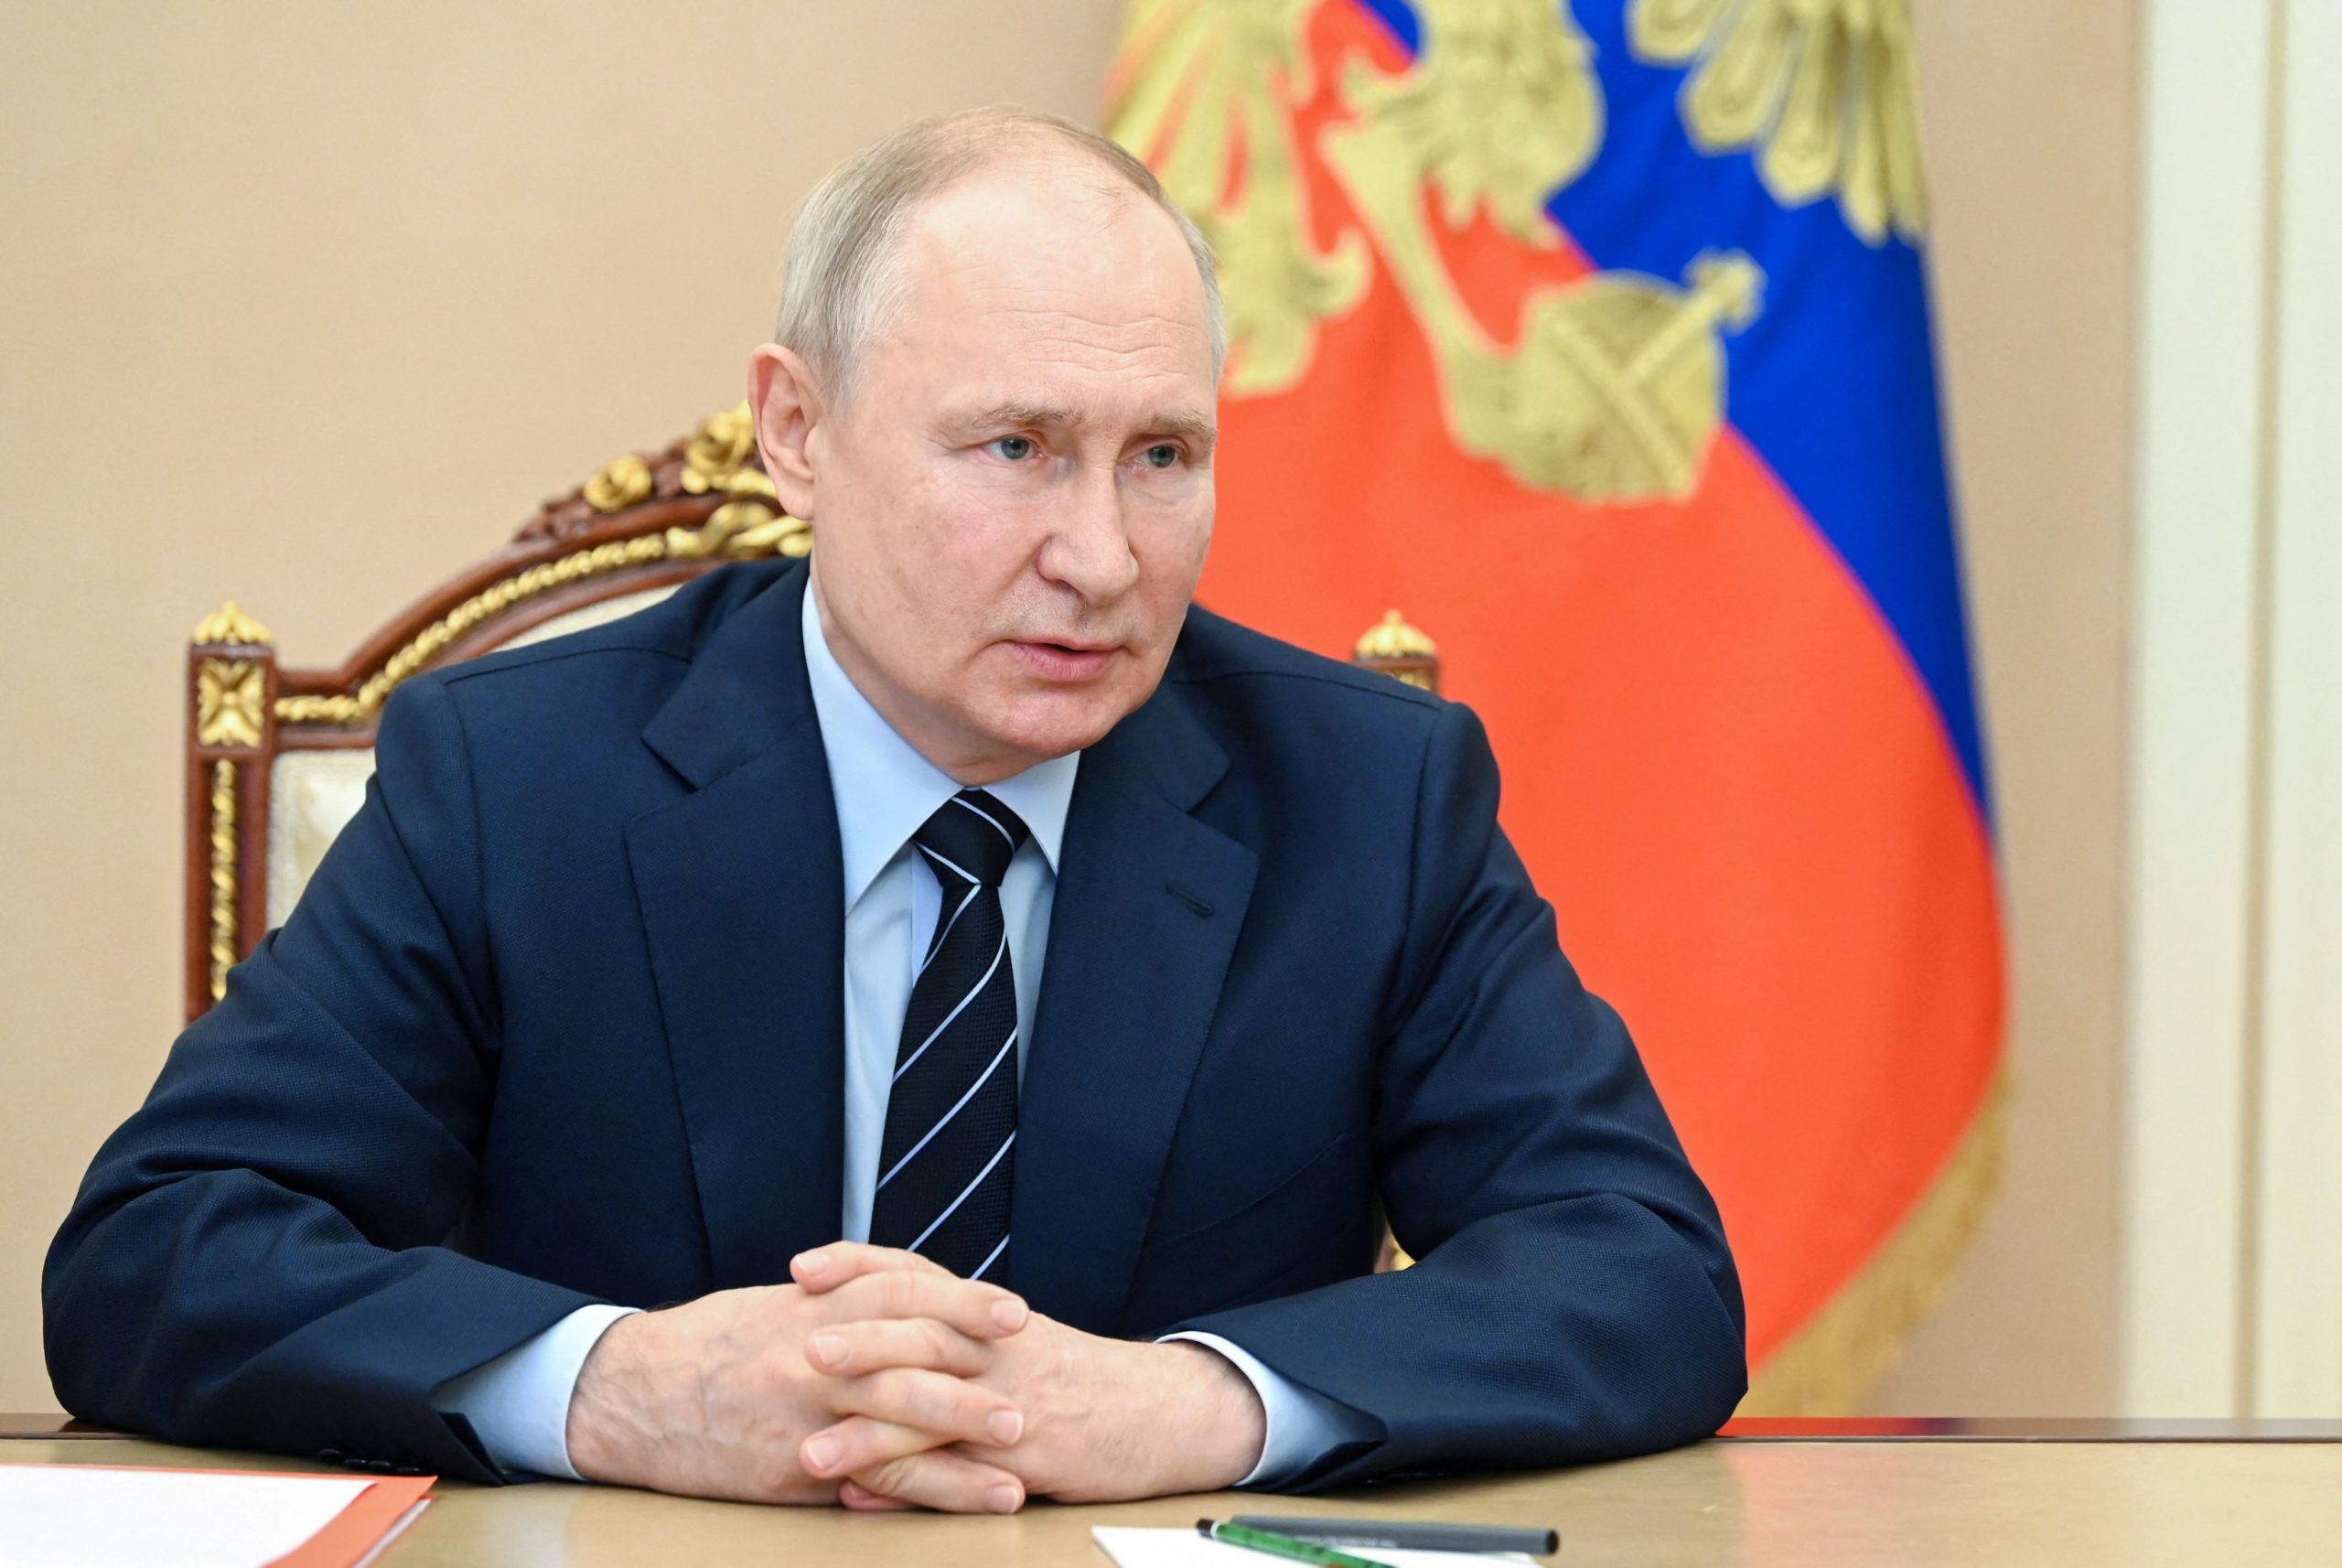 Ρωσία: Ο Πούτιν δεν θα παρέμβει στη σύνοδο της G20